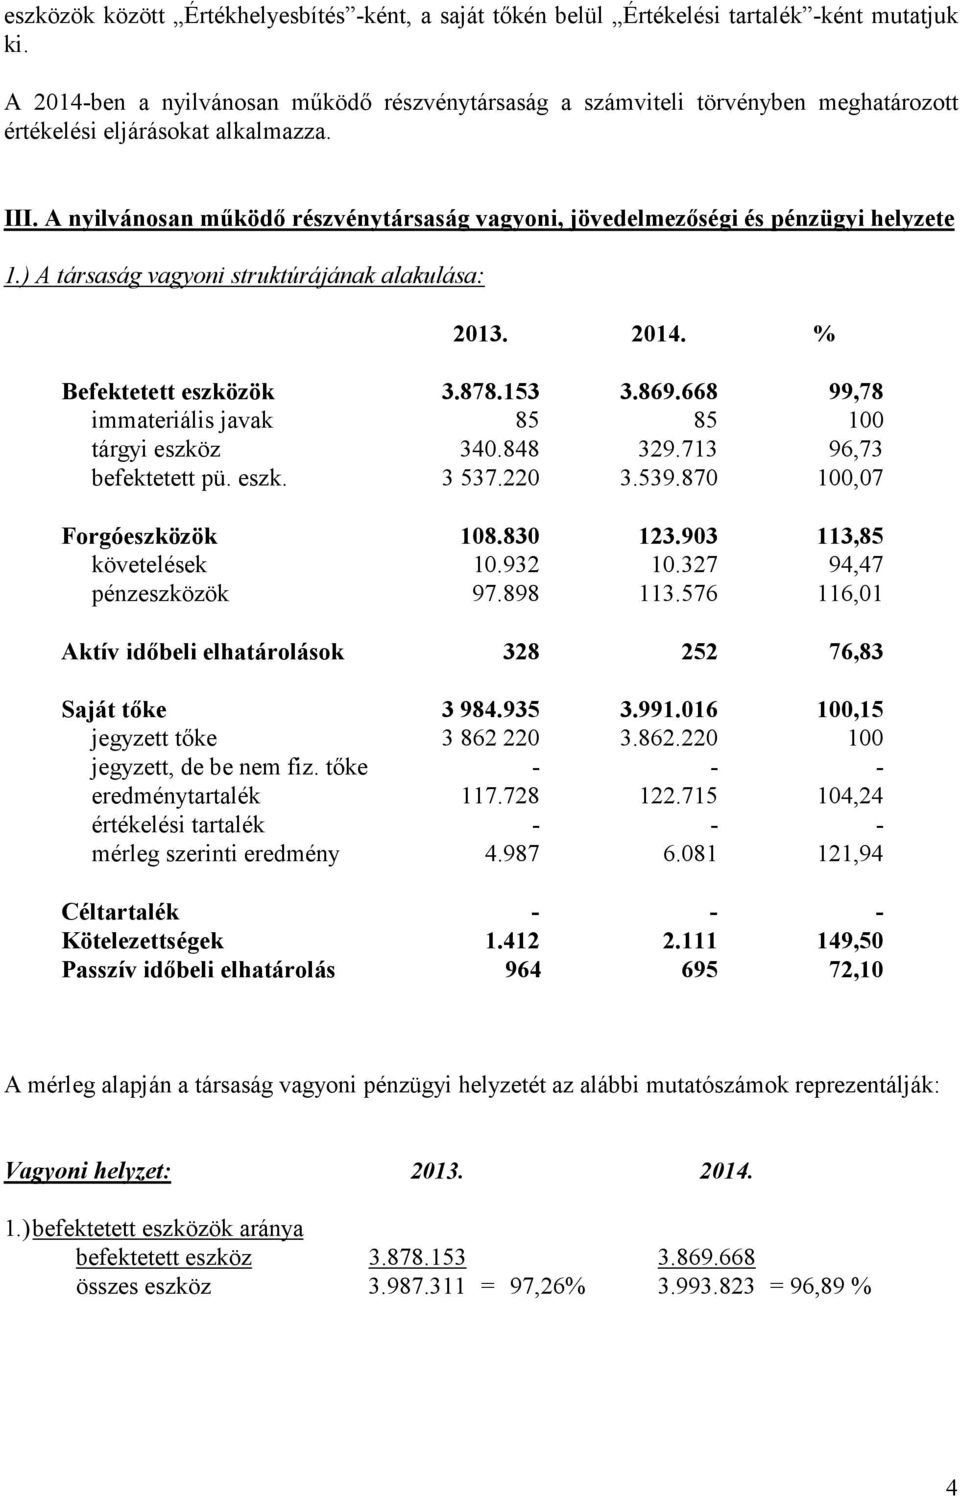 A nyilvánosan működő részvénytársaság vagyoni, jövedelmezőségi és pénzügyi helyzete 1.) A társaság vagyoni struktúrájának alakulása: 2013. 2014. % Befektetett eszközök 3.878.153 3.869.